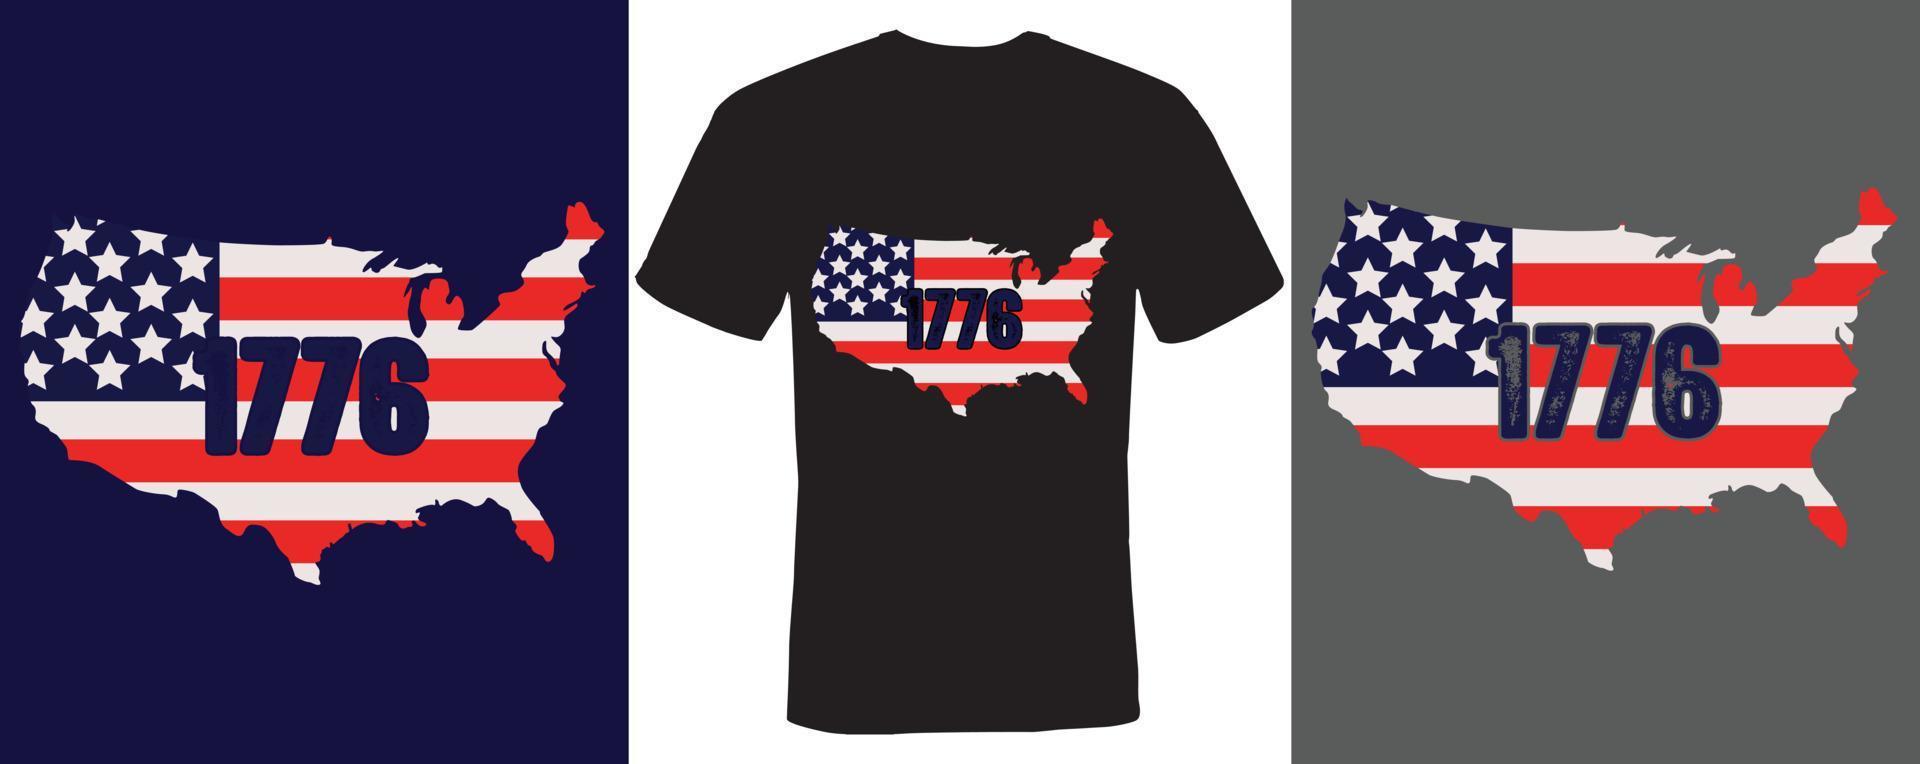 1776 t-shirt design för amerikansk vektor